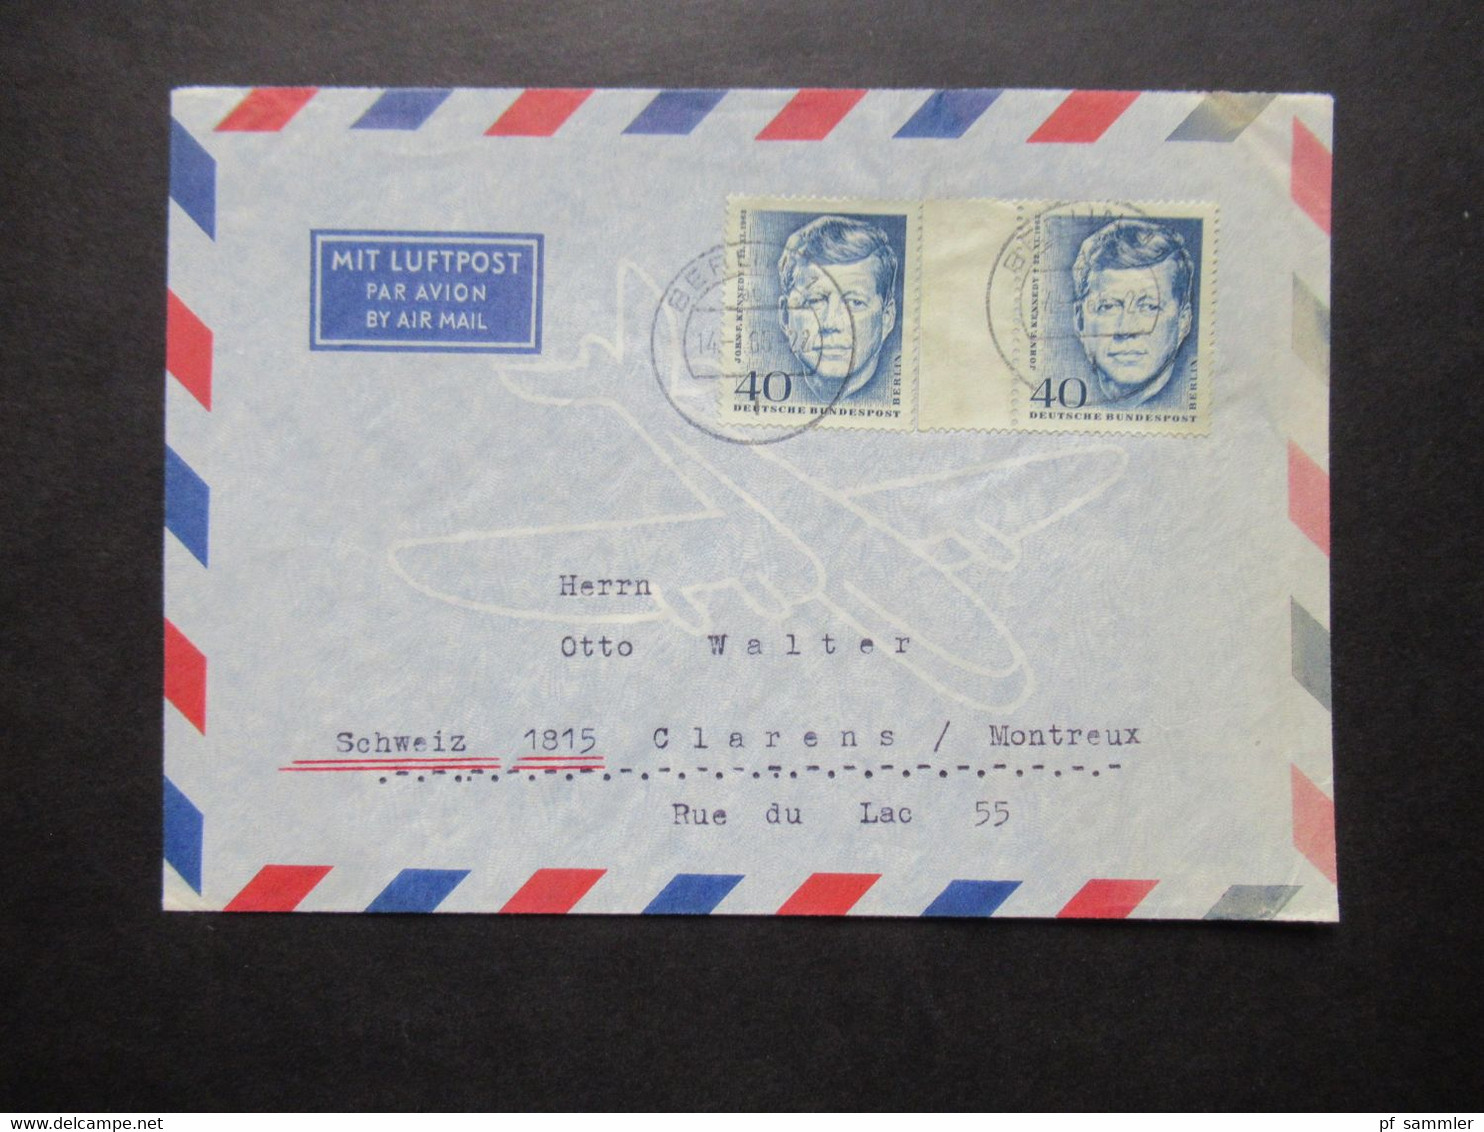 1964 Berlin (West) John F. Kennedy Nr.241 (2) MeF Auslandsbrief Mit Luftpost Berlin - Clarens Montreux Schweiz - Brieven En Documenten